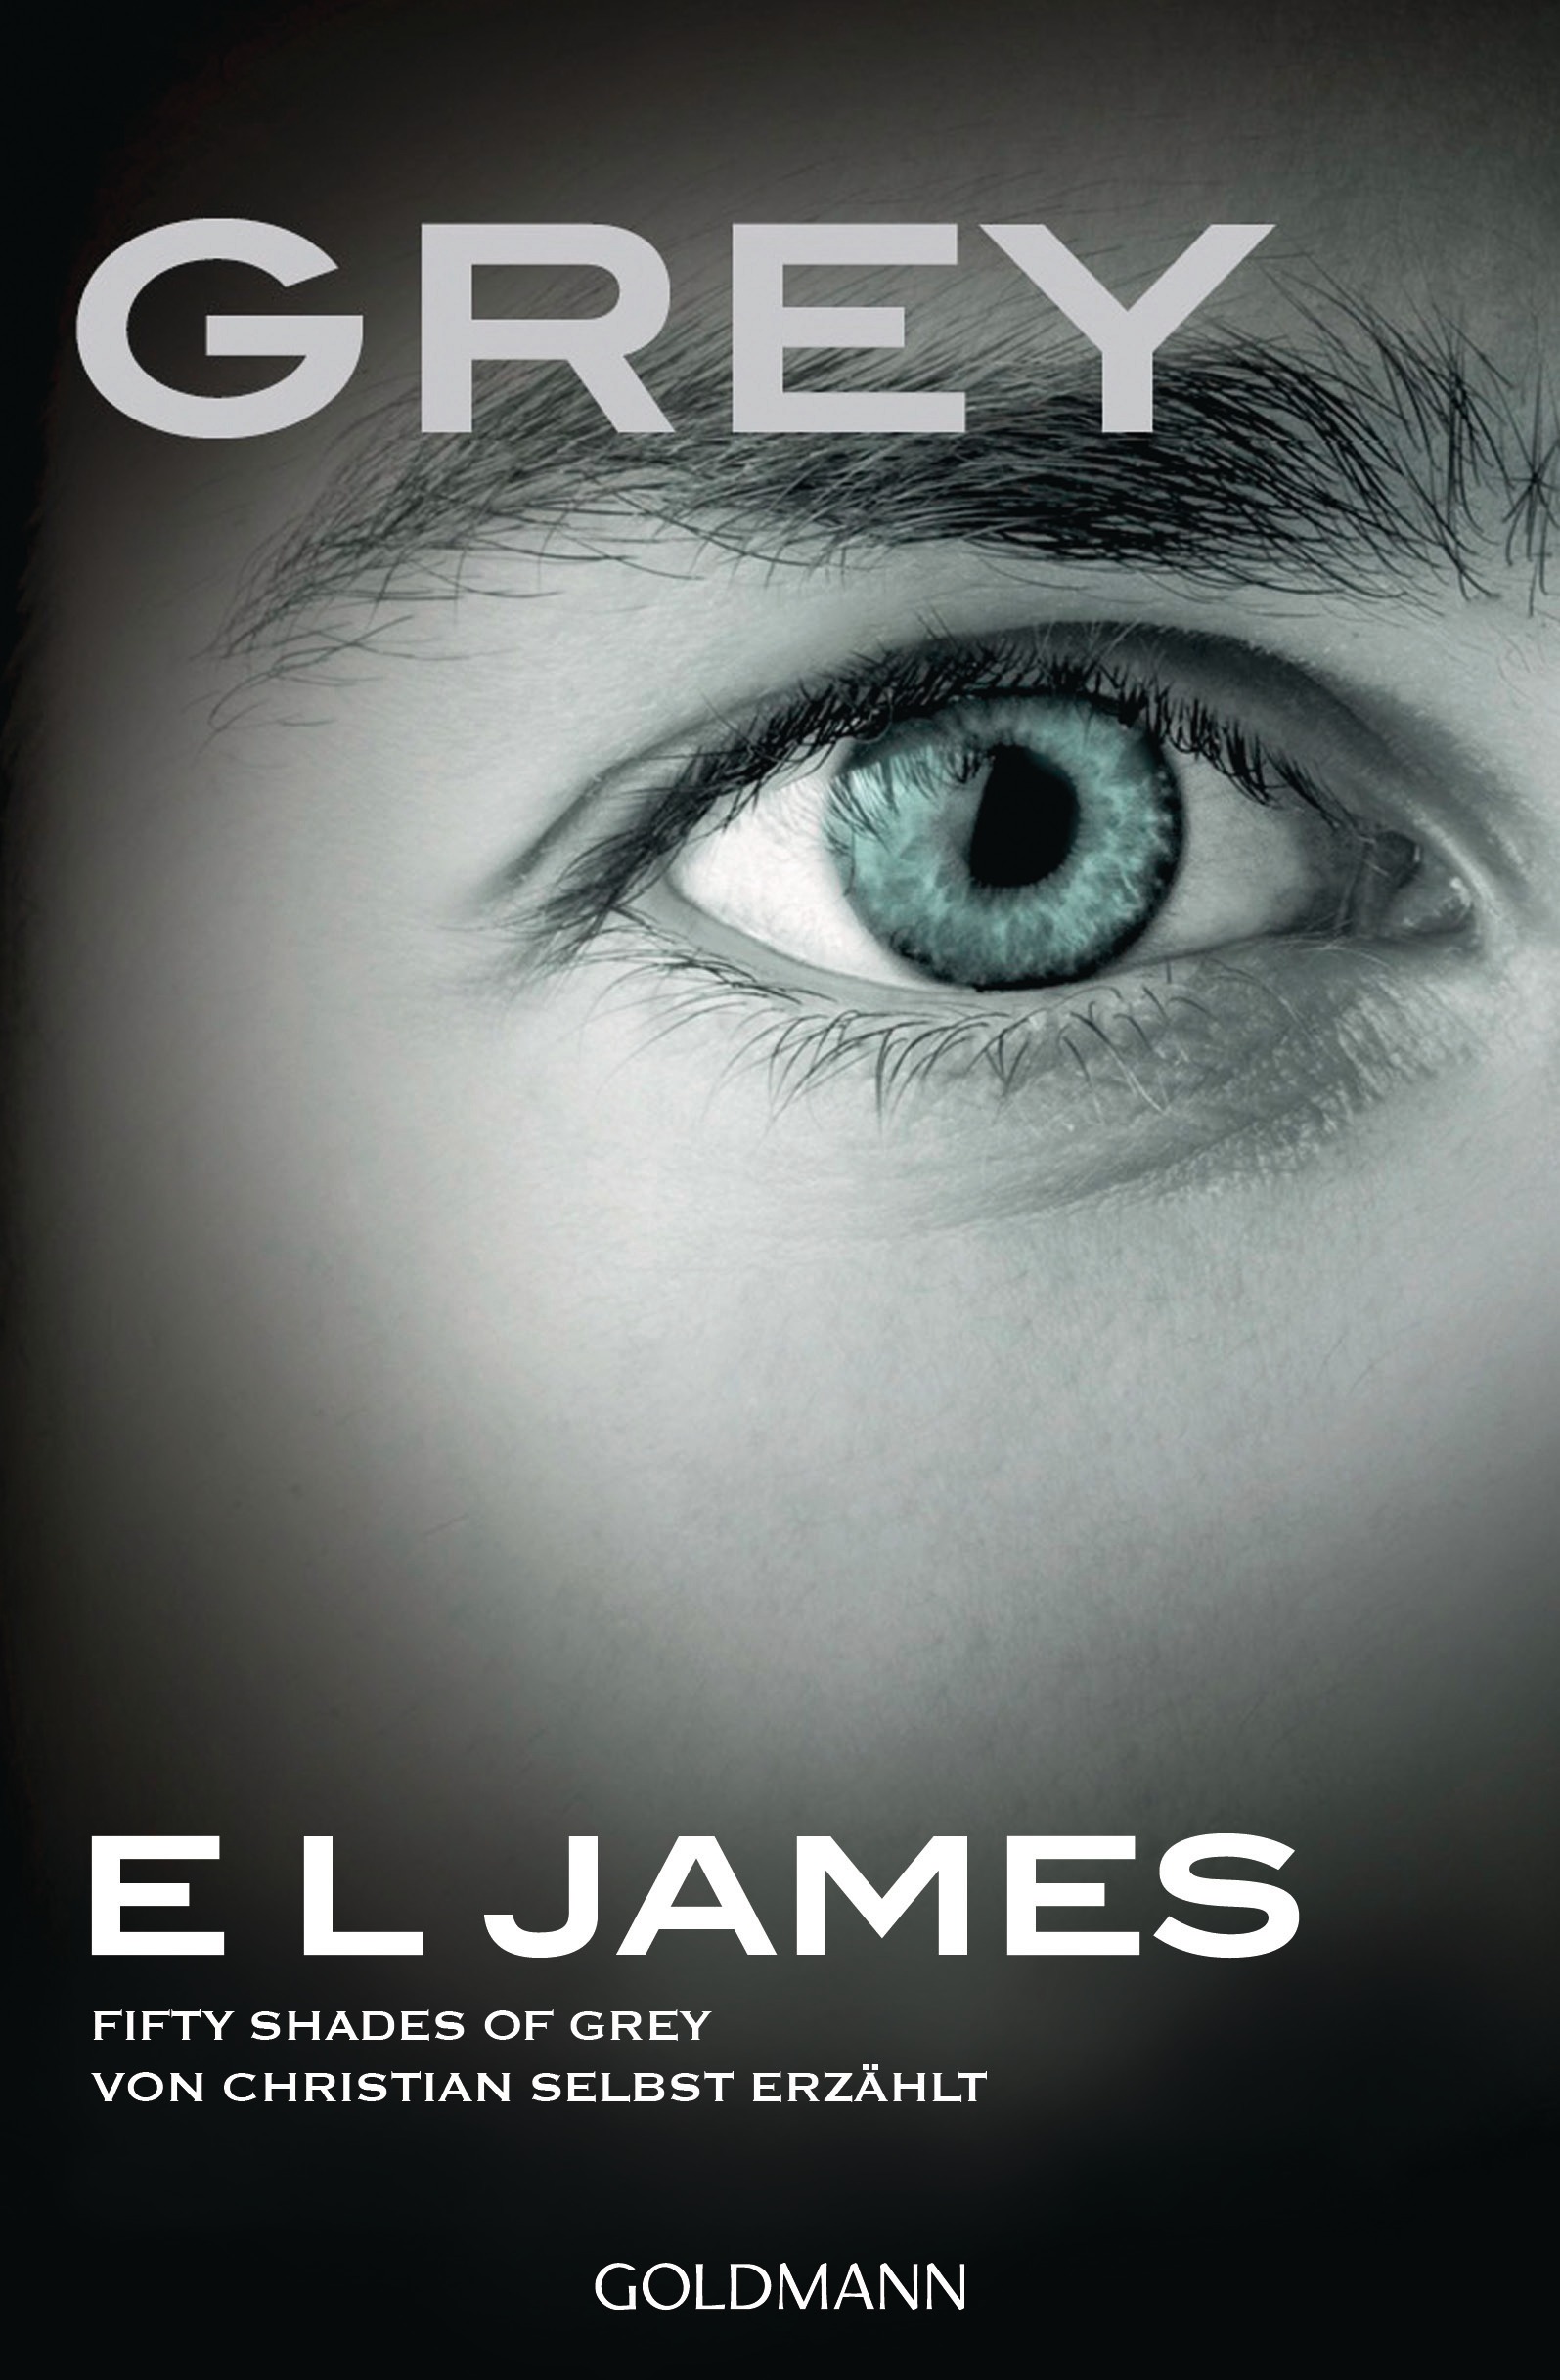 Grey. Fifty Shades of Grey von Christian selbst erzaehlt von E L James